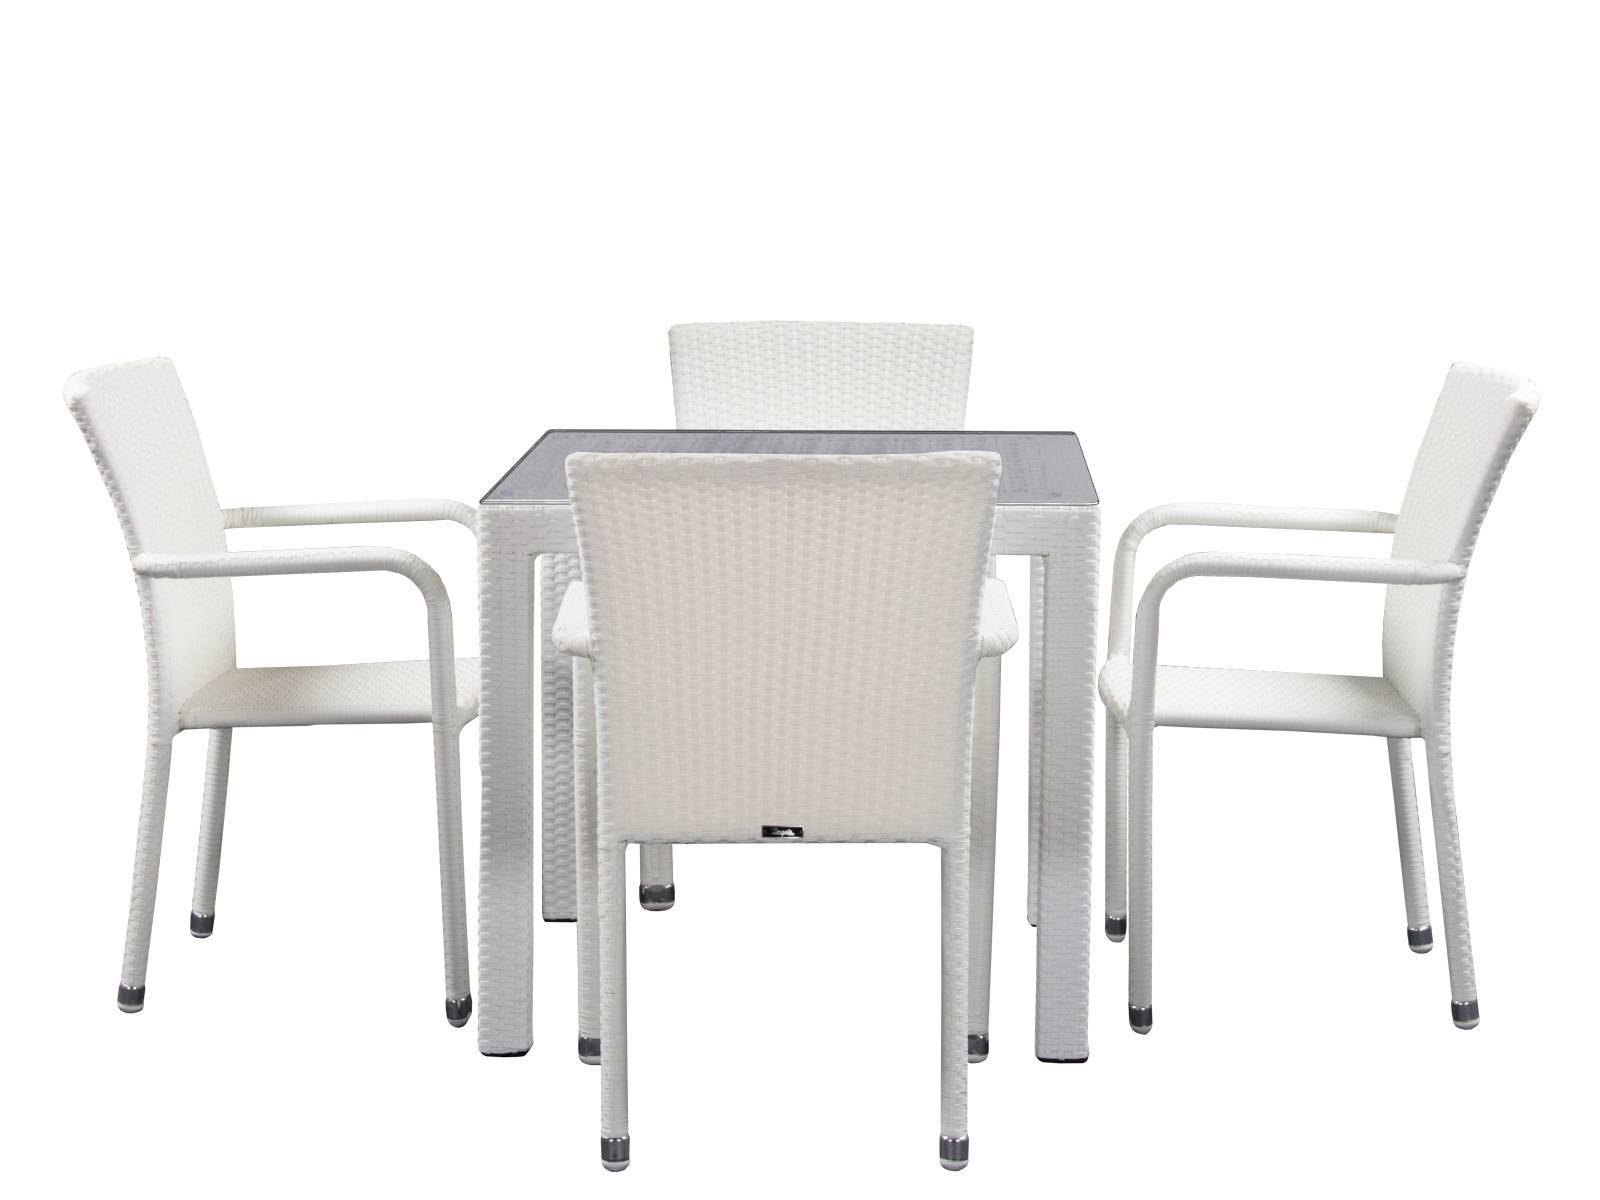 Комплект столовой группы 90*90 YALTA White на 4 персоны